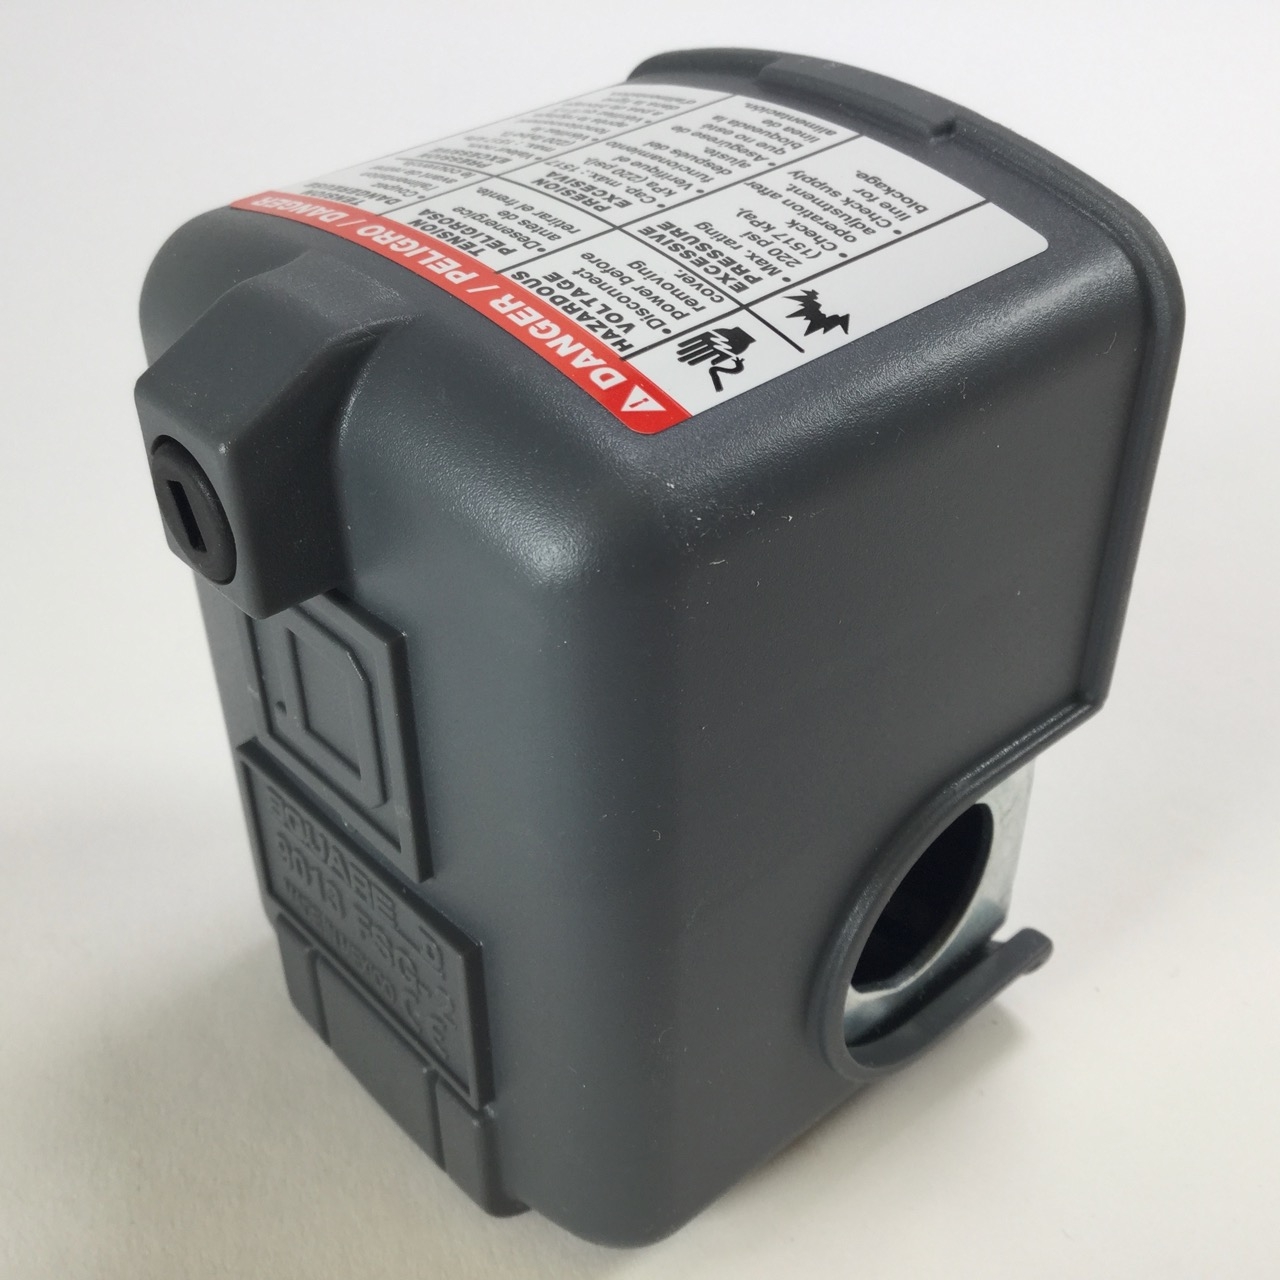 Schneider Electric 9013fsg2 Pressure Switch Manostat Druckwachter New Nfp